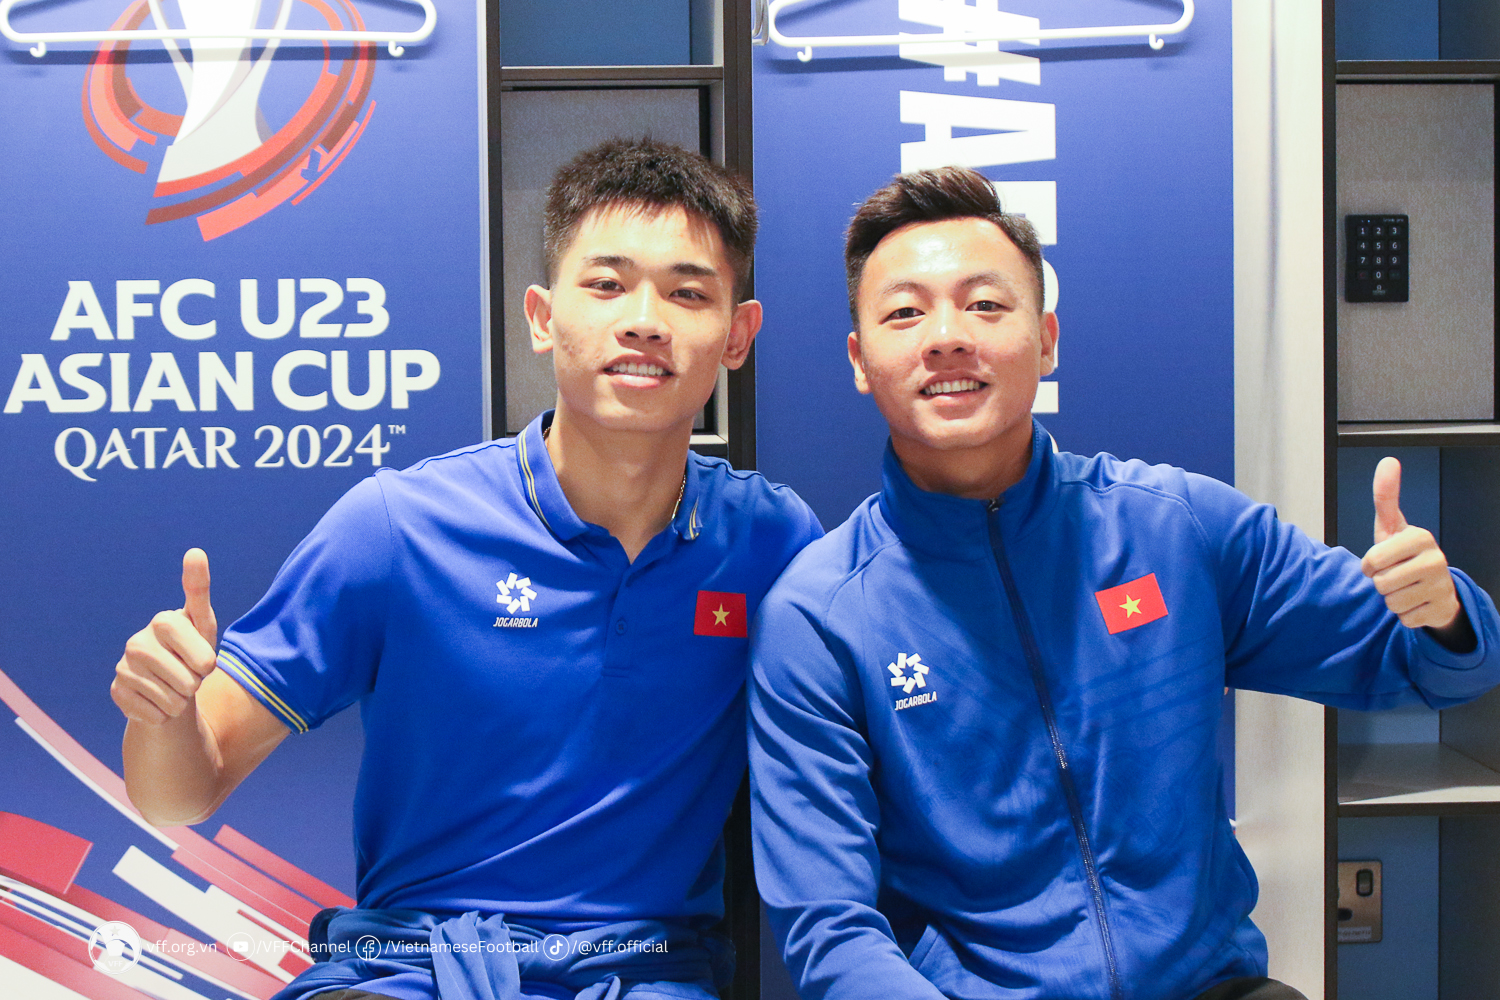 Đình Bắc (trái) và Thái Sơn là 2 cầu thủ giàu kinh nghiệm nhất của U.23 Việt Nam hiện tại. Họ đã được ra sân rất nhiều trong màu áo đội tuyển Việt Nam, dưới thời HLV Troussier